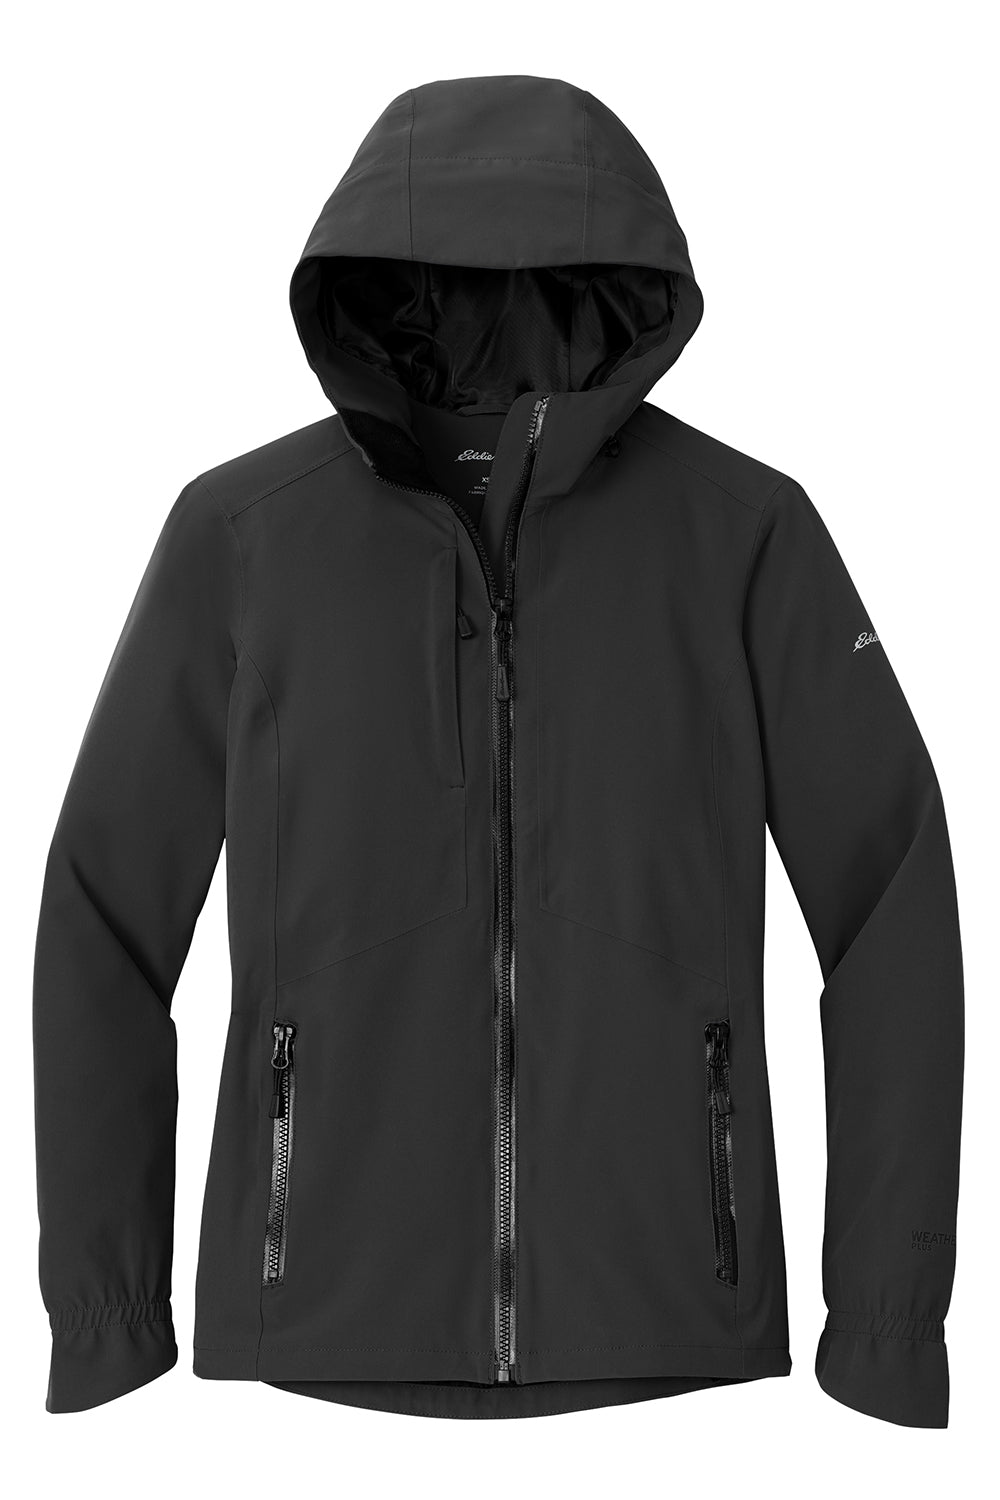 Eddie Bauer EB561 Womens WeatherEdge Plus Waterproof Full Zip Hooded Jacket Deep Black Flat Front